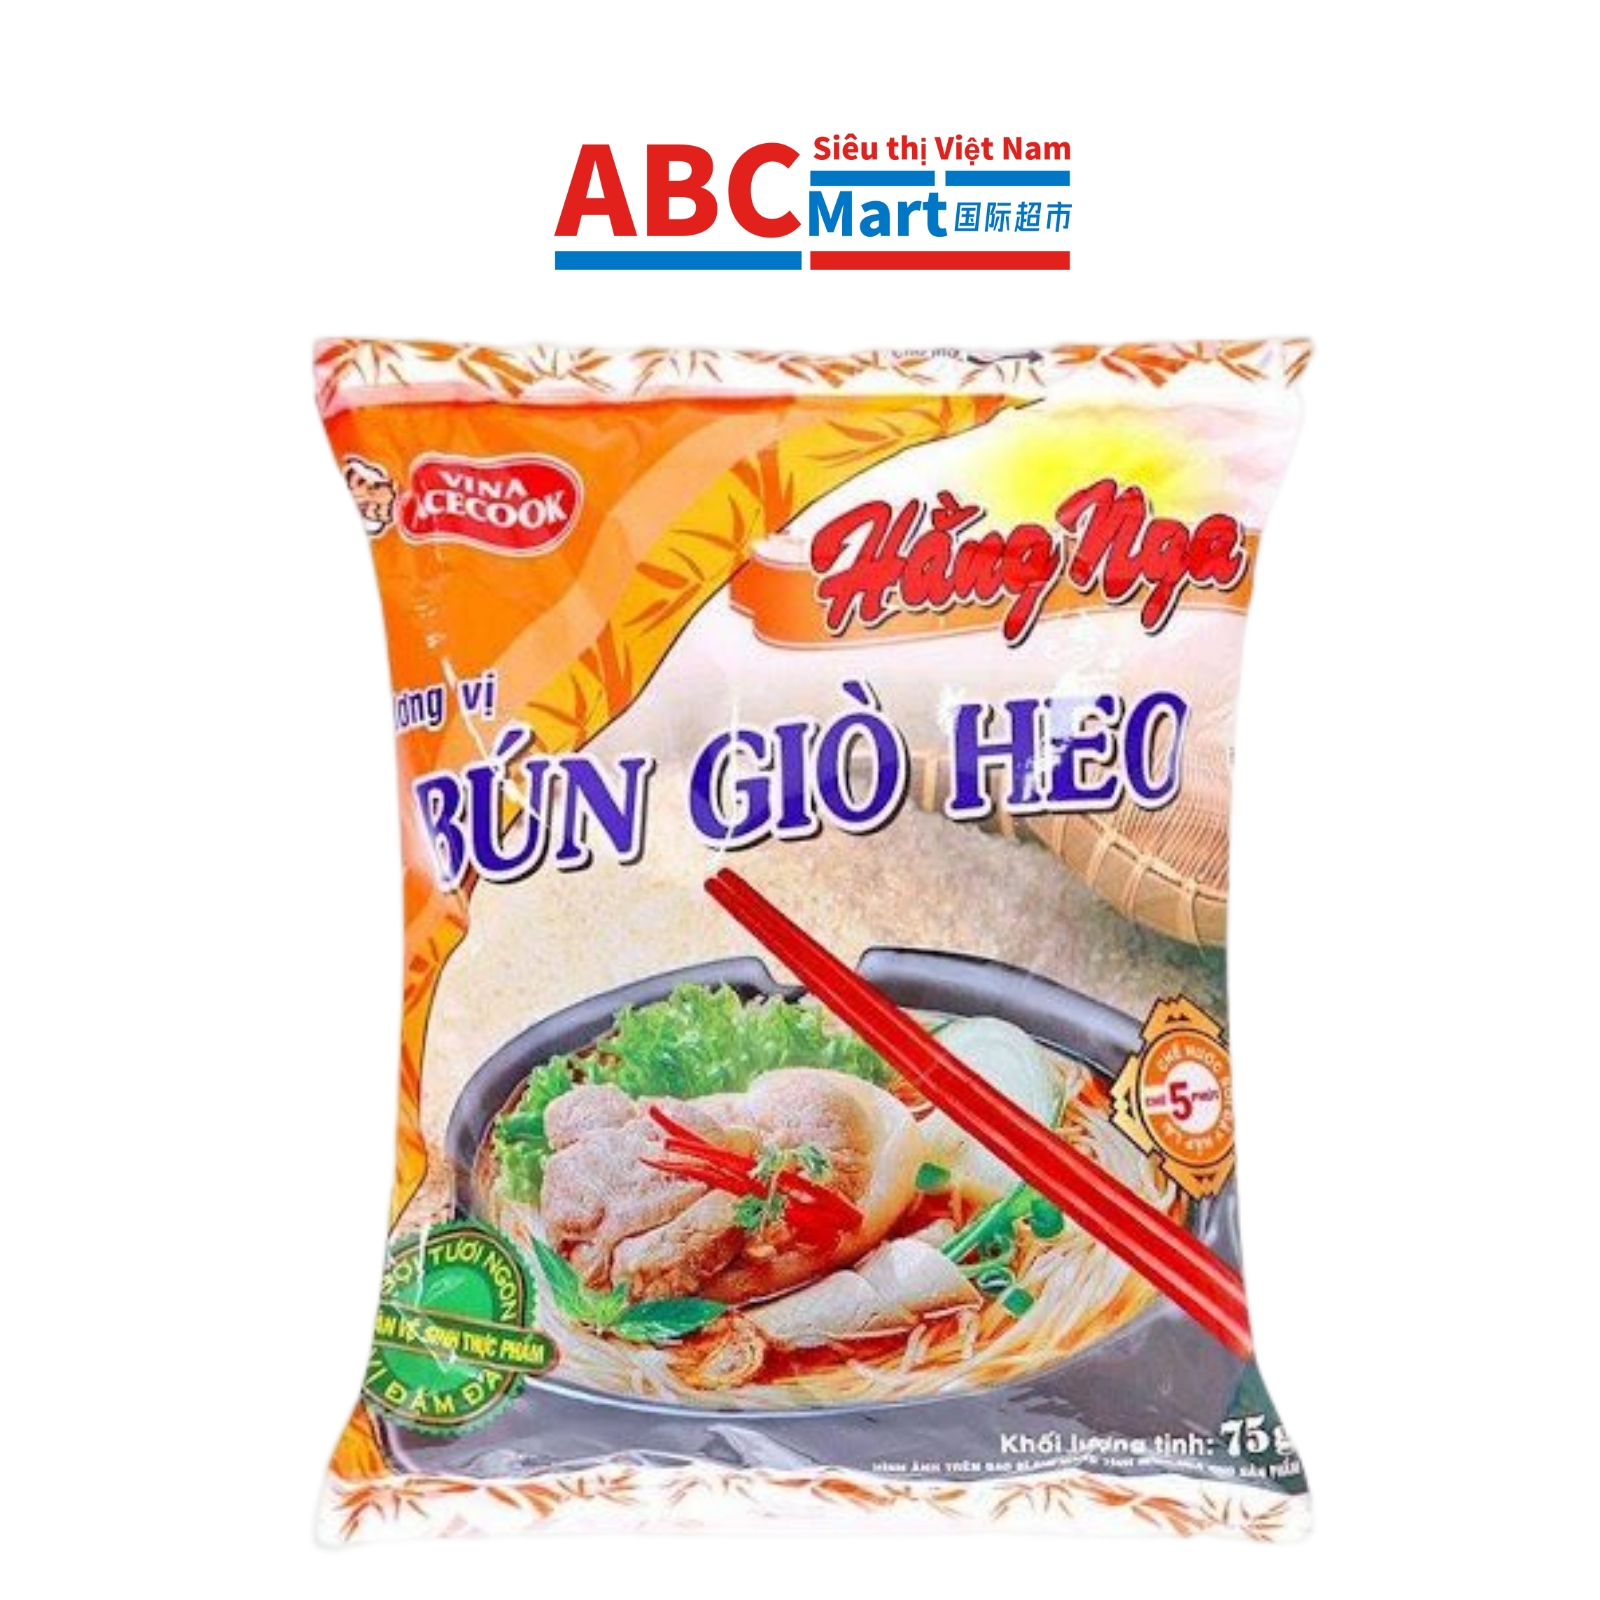 【Việt Nam- Bún giò heo Hằng Nga 75g 】猪肉米粉粉丝泡面-ABCMart 国际超市